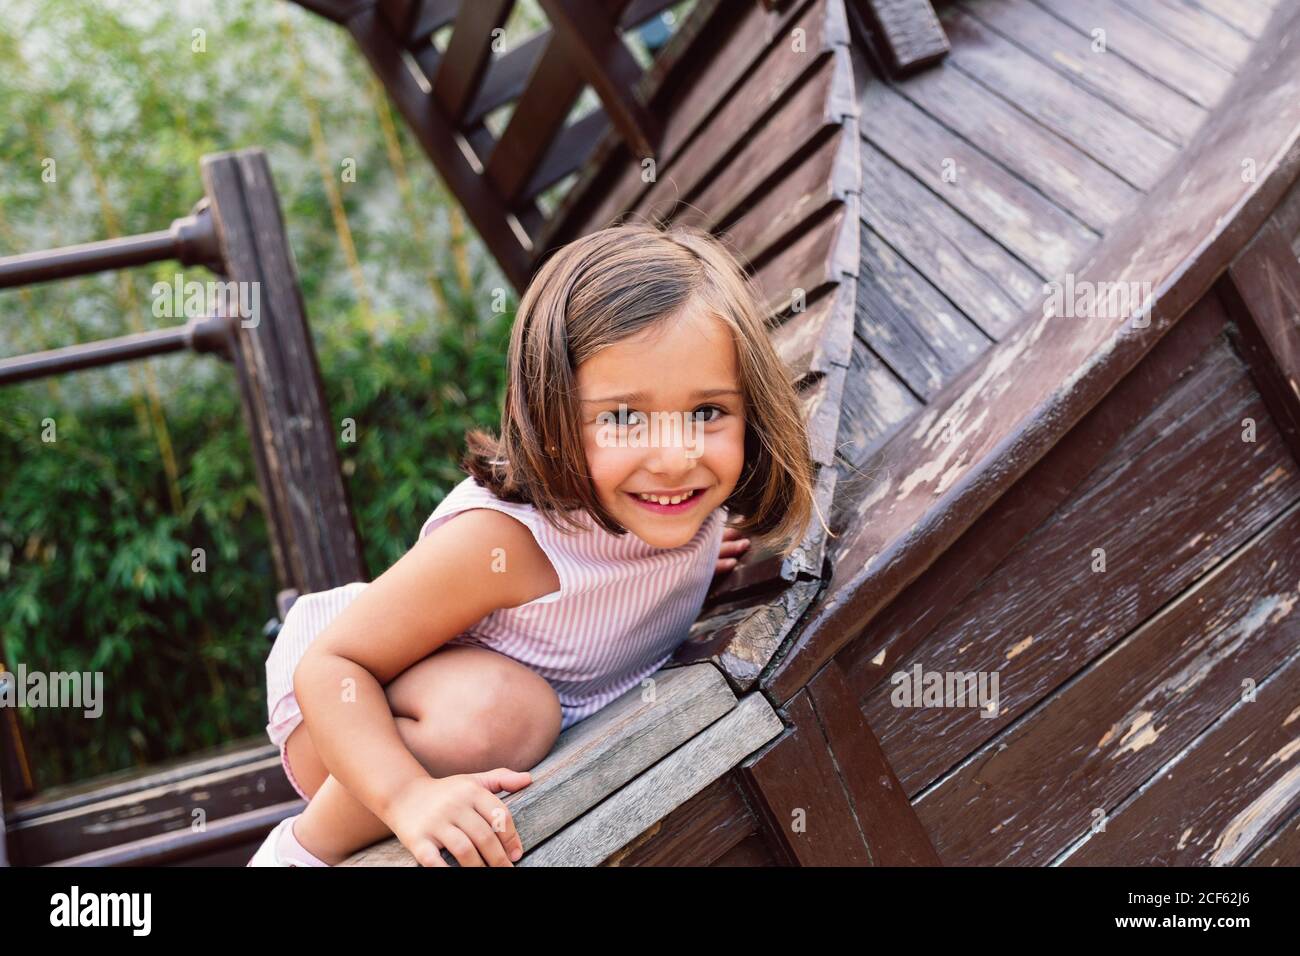 Alegre chica nimble subir a la estructura de madera y mirar cámara con sonrisa Foto de stock